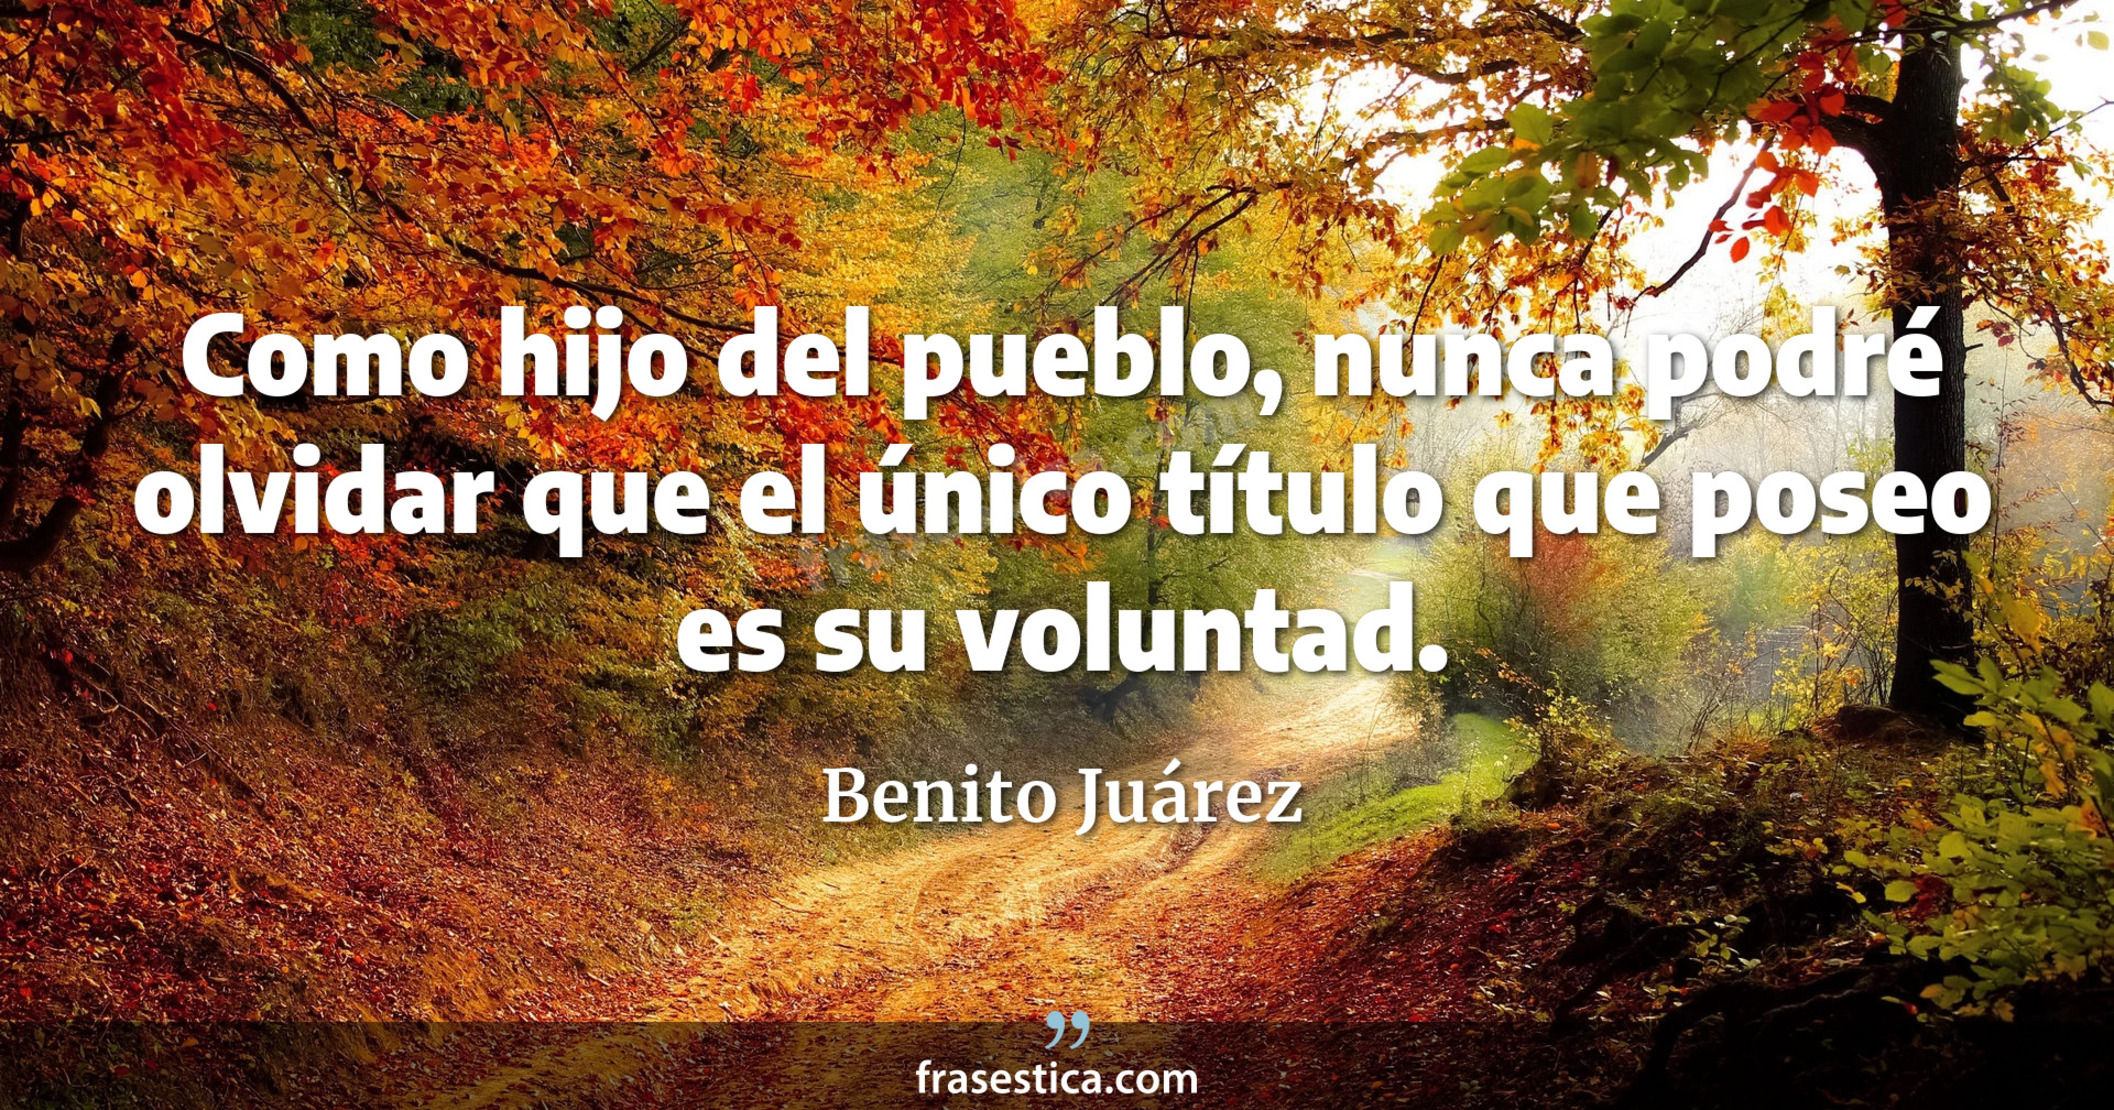 Como hijo del pueblo, nunca podré olvidar que el único título que poseo es su voluntad. - Benito Juárez